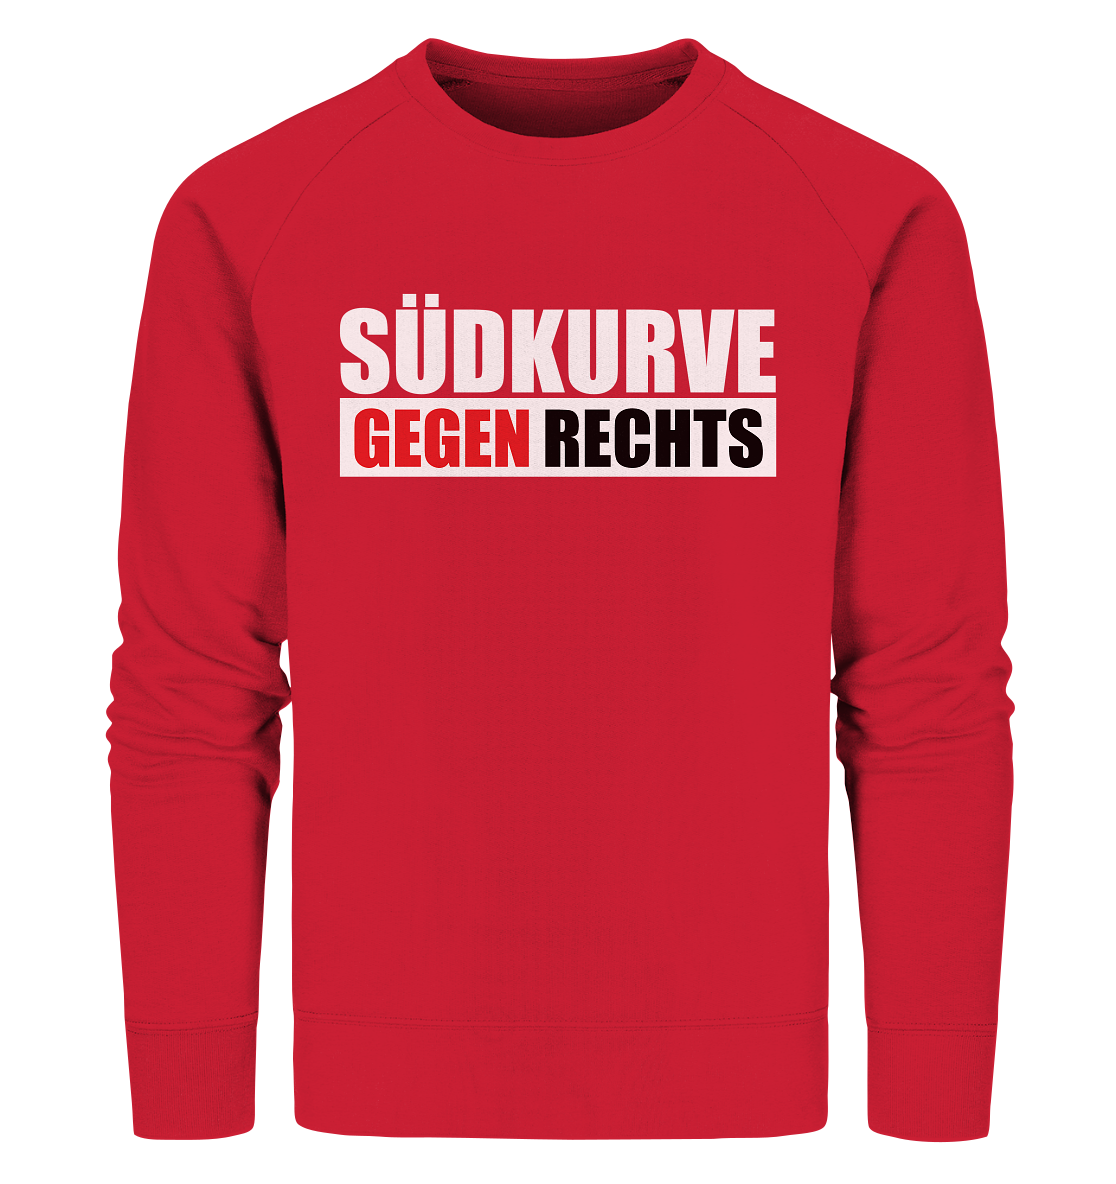 N.O.S.W. BLOCK Gegen Rechts Sweater "SÜDKURVE GEGEN RECHTS" Männer Organic Sweatshirt rot